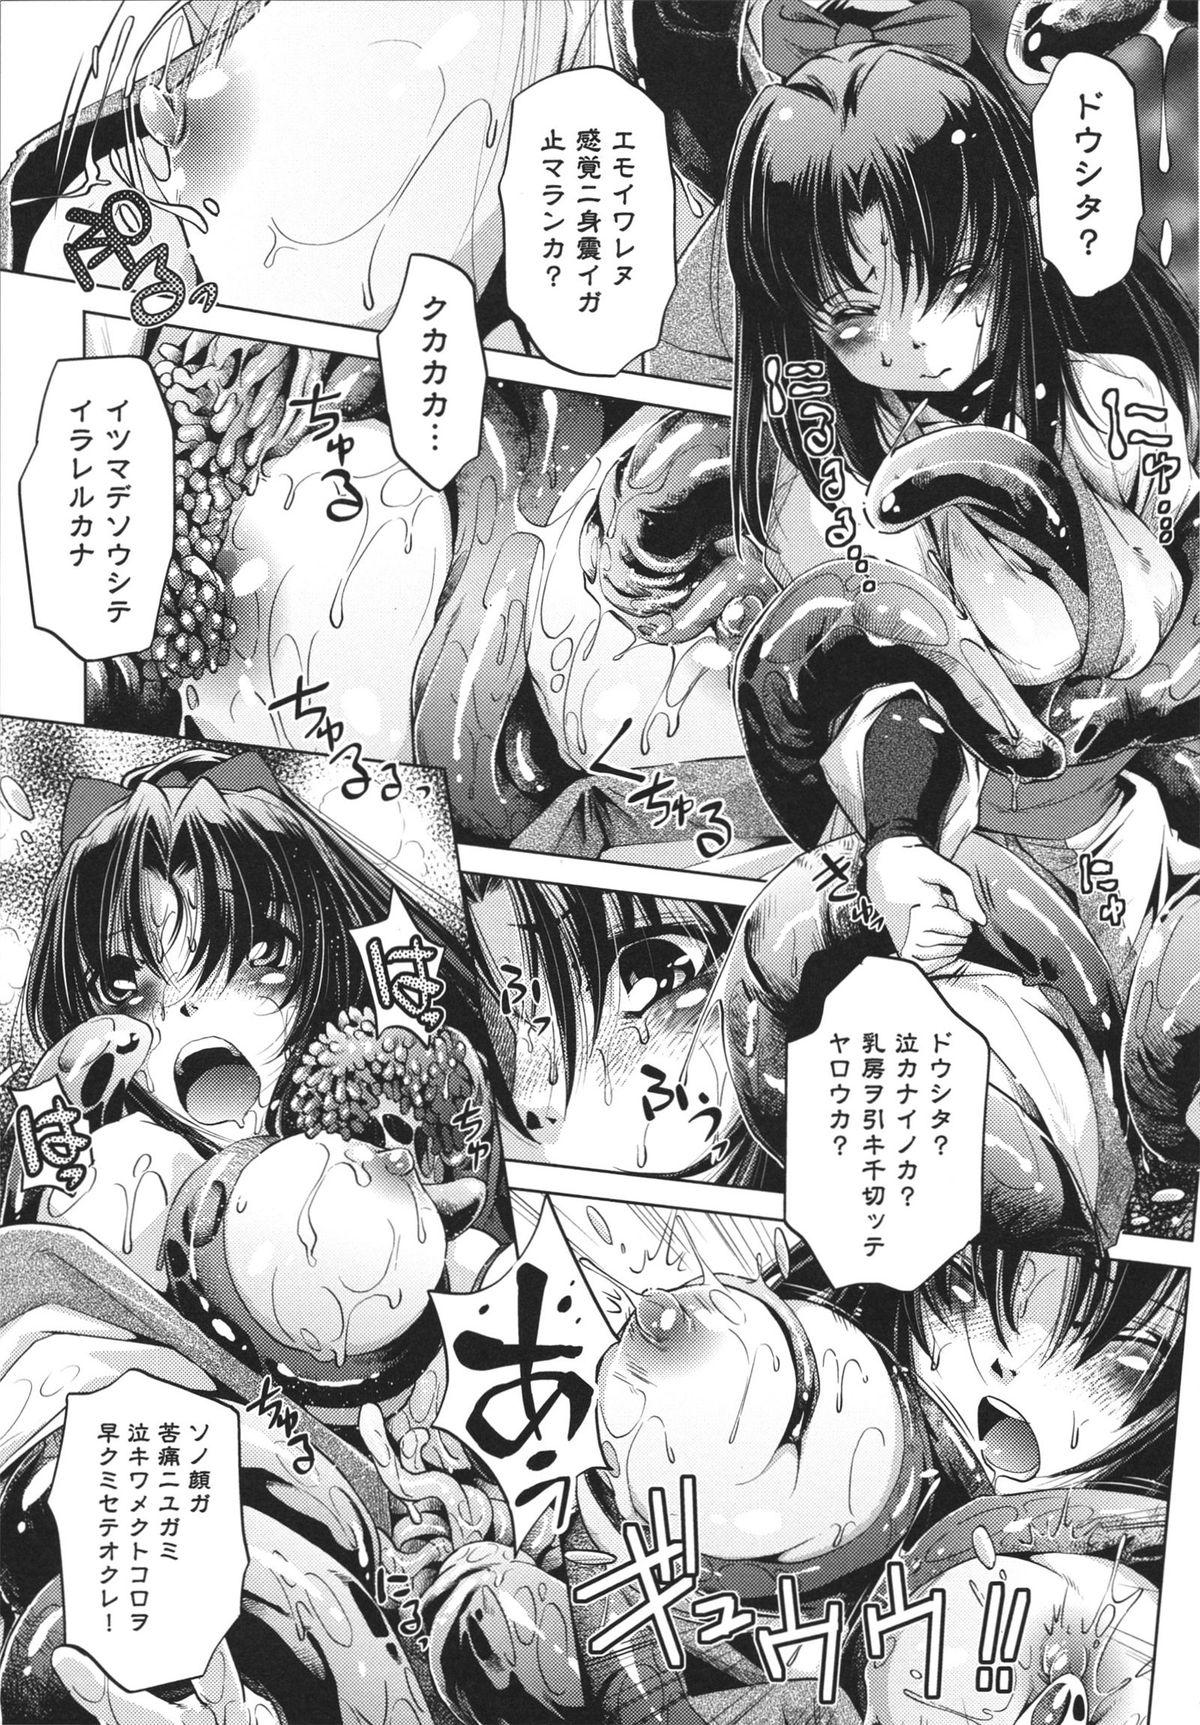 [Ootori Ryuuji] Shokushu wa Yawarakana Chibusa ni Makitsuki Onna-tachi no Ana wo Kakimidasu - Feeler coils around a soft breast and violates women's hole. 40